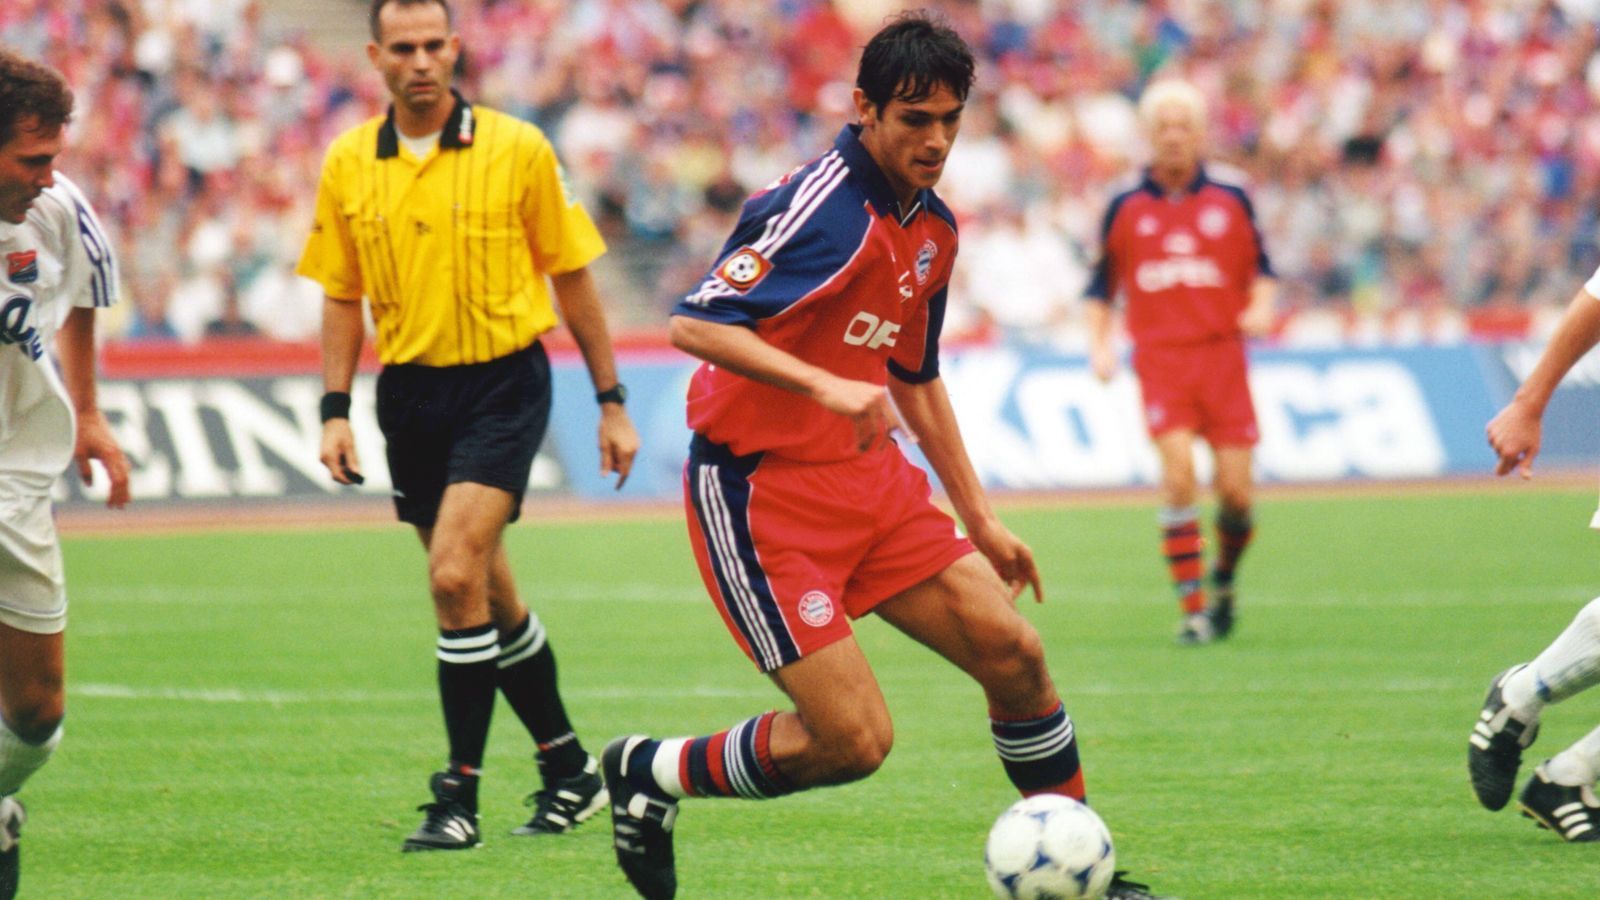 
                <strong>Platz 2 - Roque Santa Cruz</strong><br>
                Alter beim ersten Bundesliga-Tor für Bayern: 18 Jahre, zwölf TageBegegnung: FC Bayern München - SpVgg Unterhaching 1:0 (28. August 1999)
              